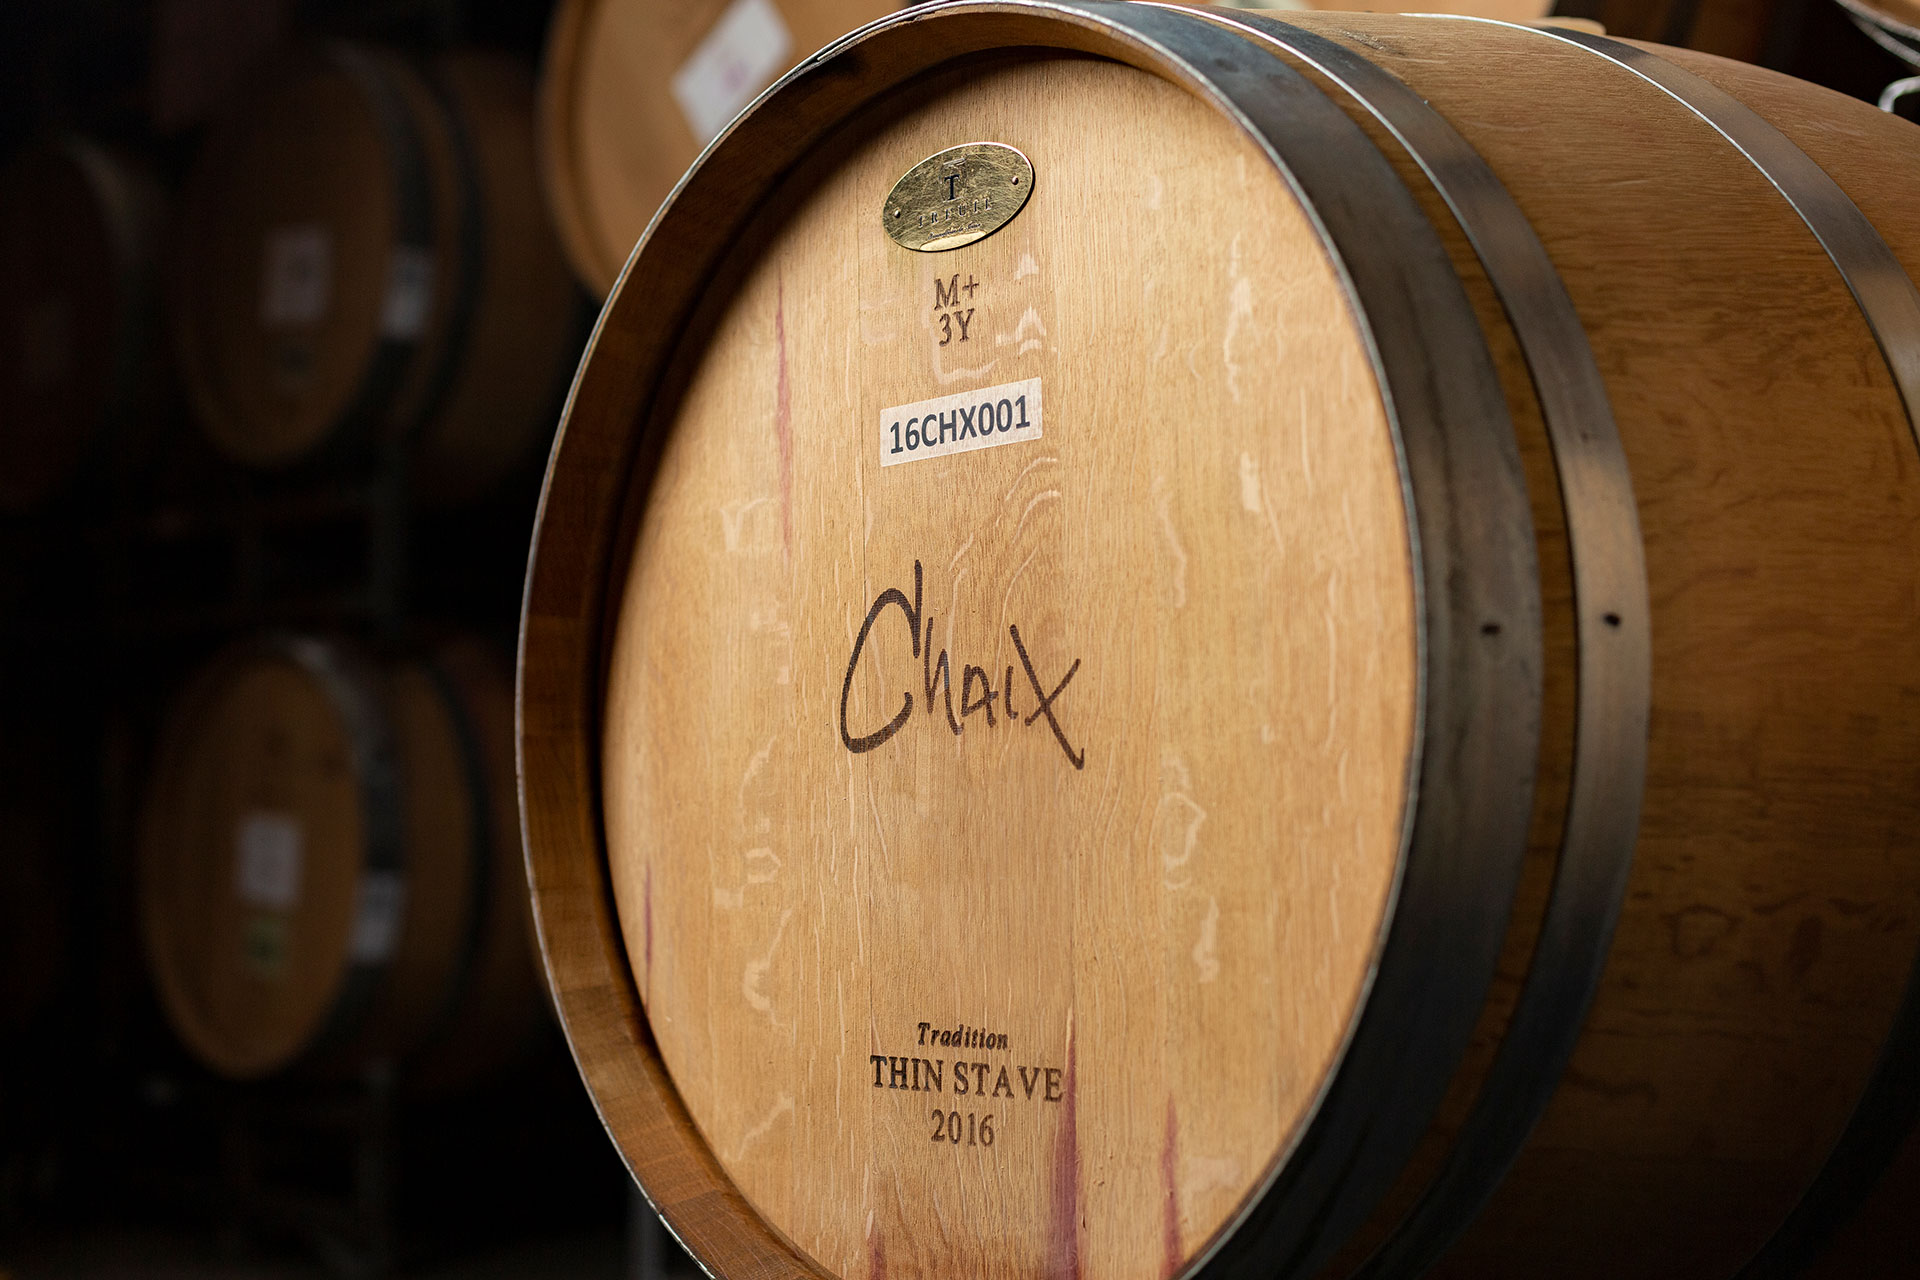 Chaix Cabernet Sauvignon Oak Barrels by Frank Gutierrez